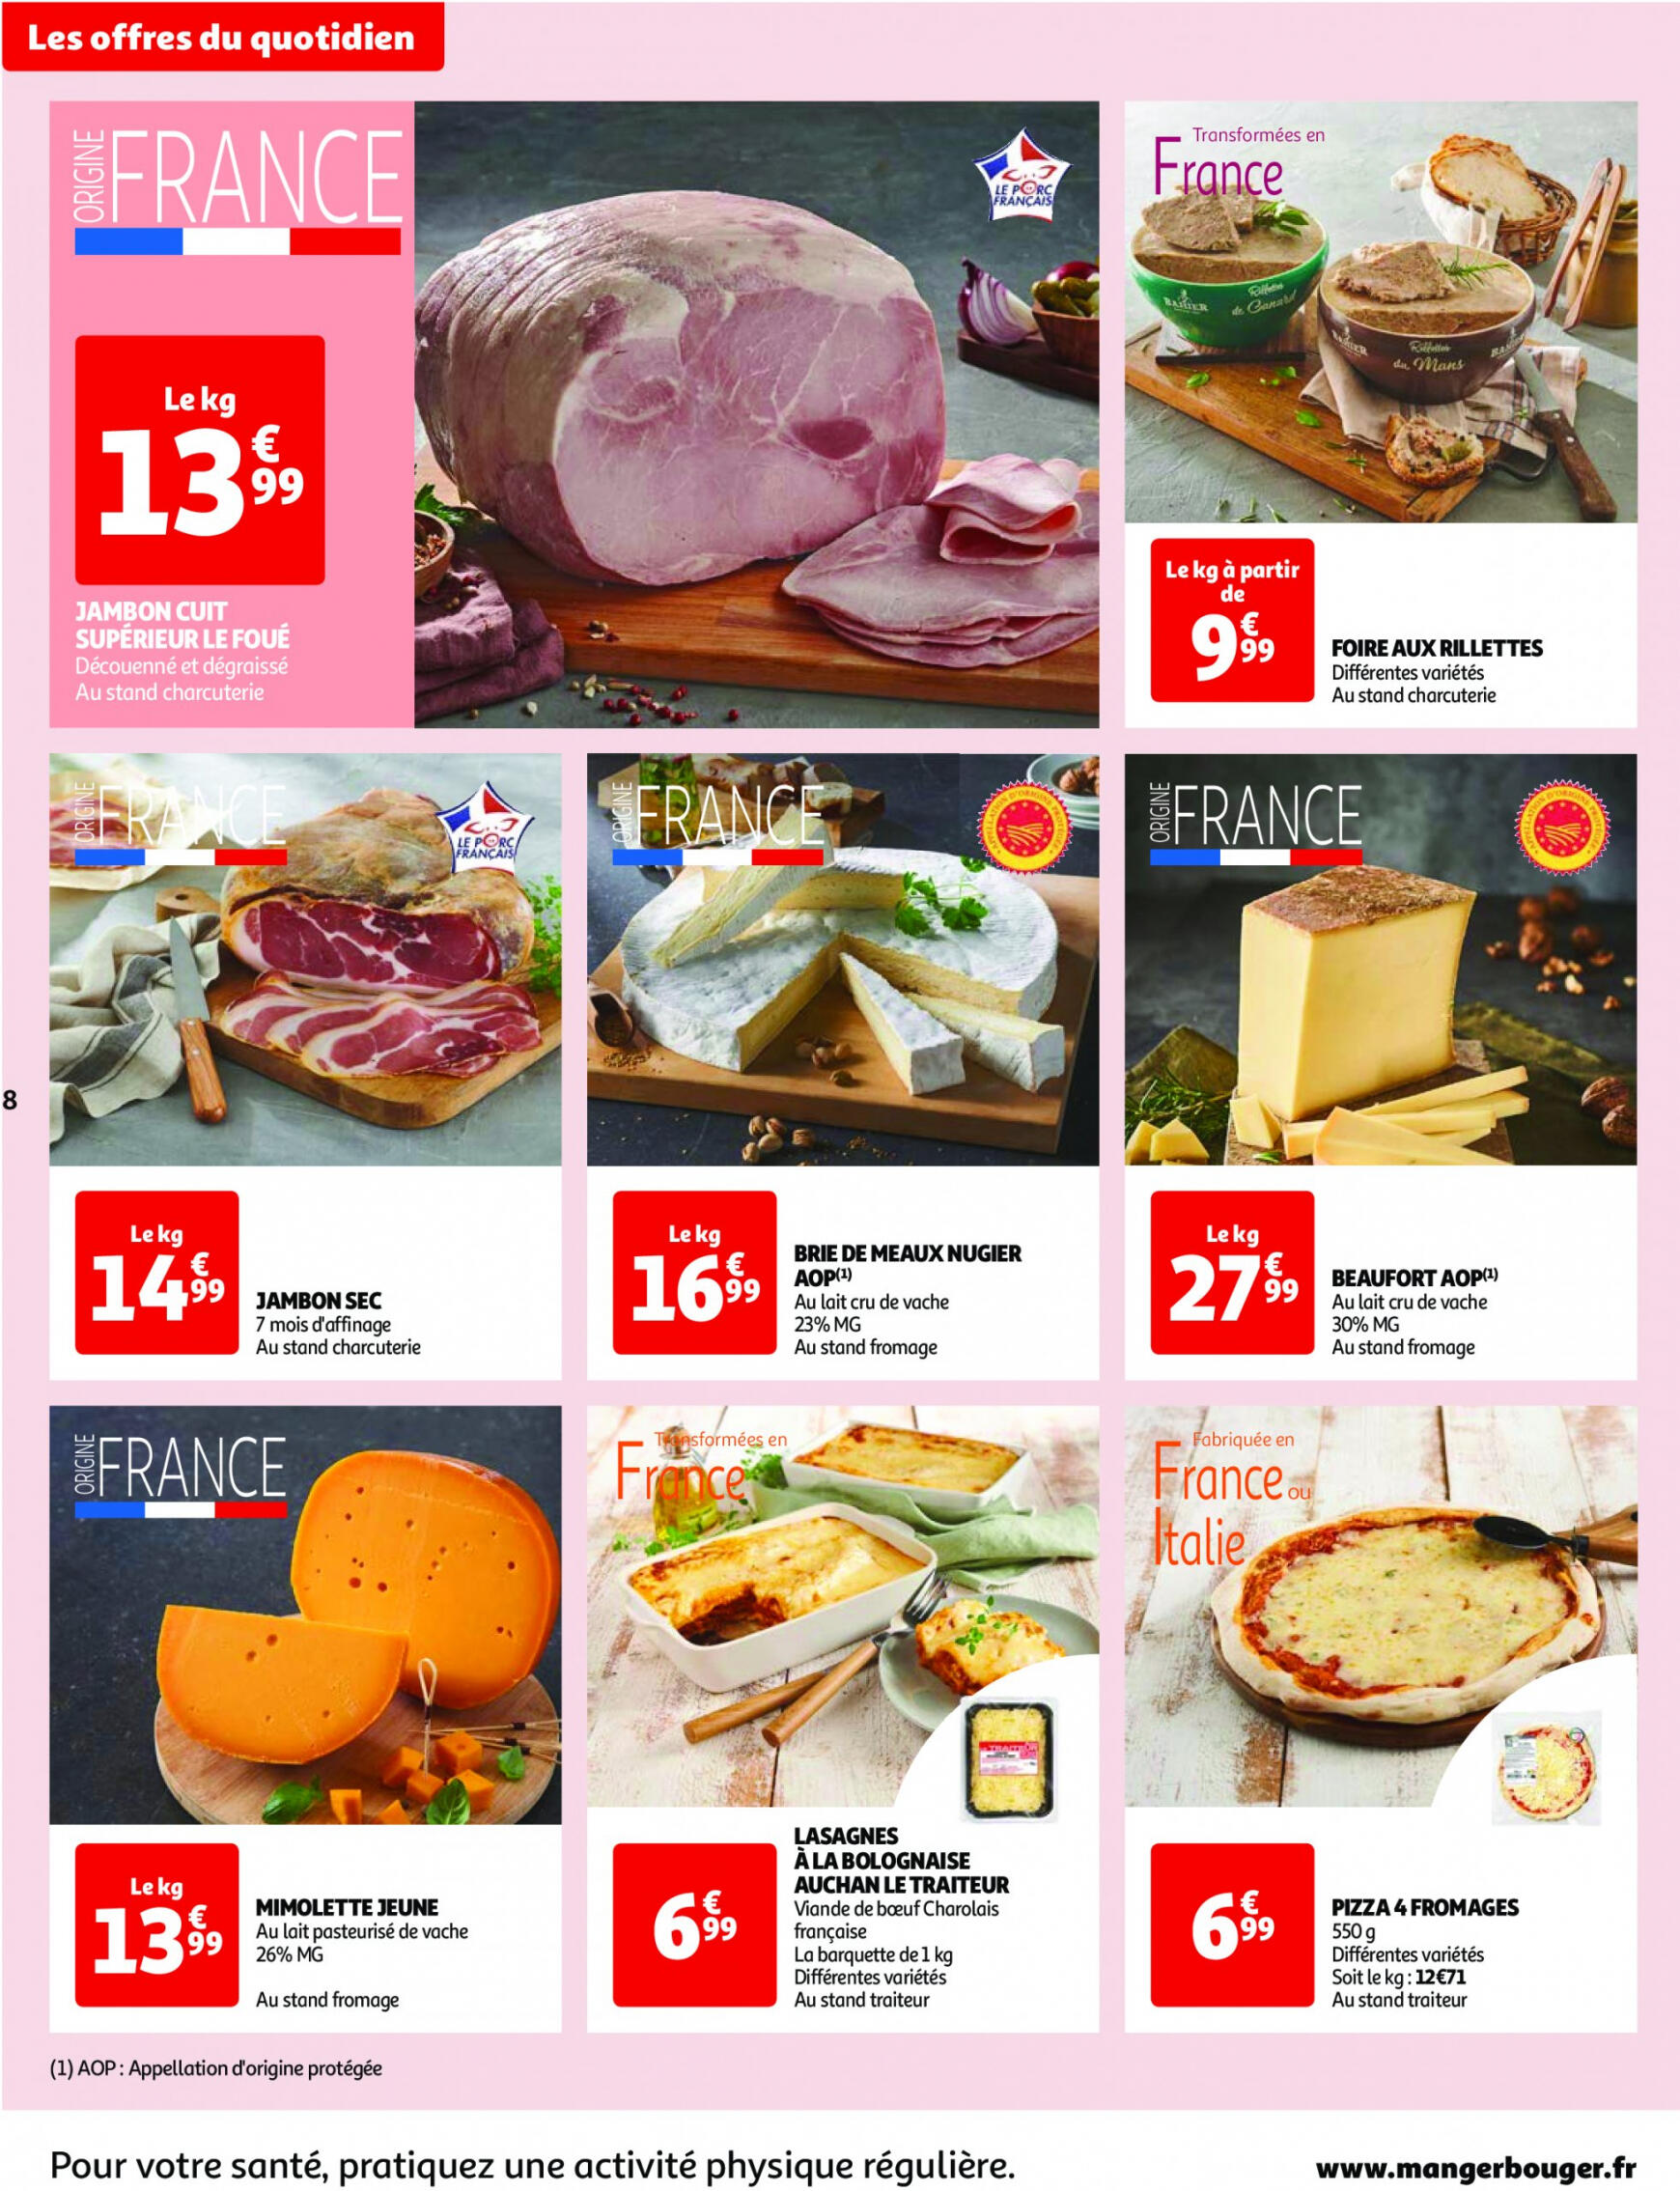 auchan - Auchan - Nos surgelés ont tout bon folder huidig 14.05. - 21.05. - page: 8